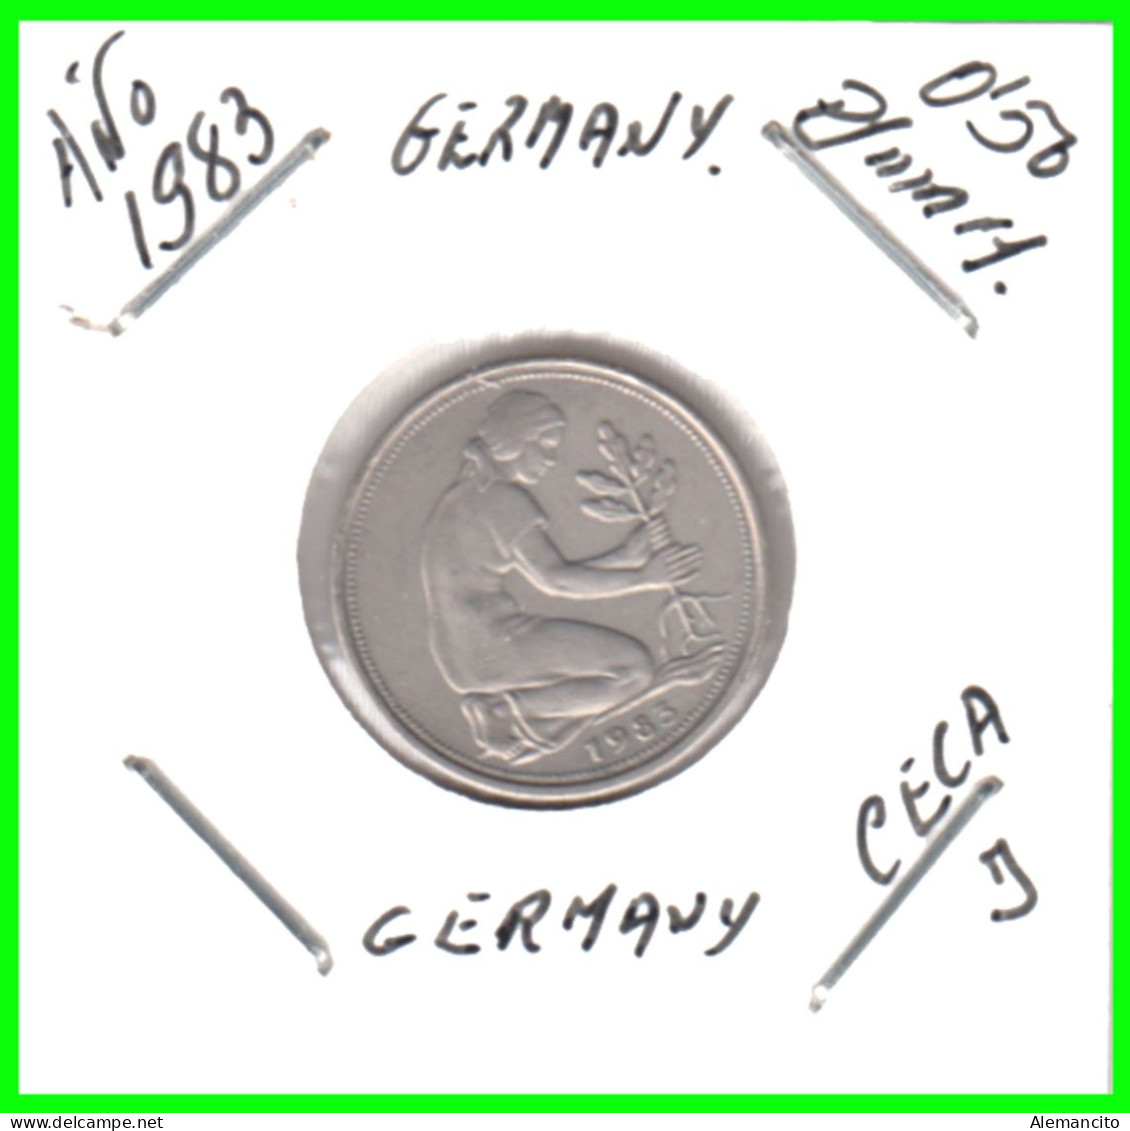 ALEMANIA -DEUTSCHLAND - GERMANY-MONEDA DE LA REPUBLICA FEDERAL DE ALEMANIA DE 50 Pfn-DEL AÑO - 1983-CECA - J - HAMBURGO - 50 Pfennig